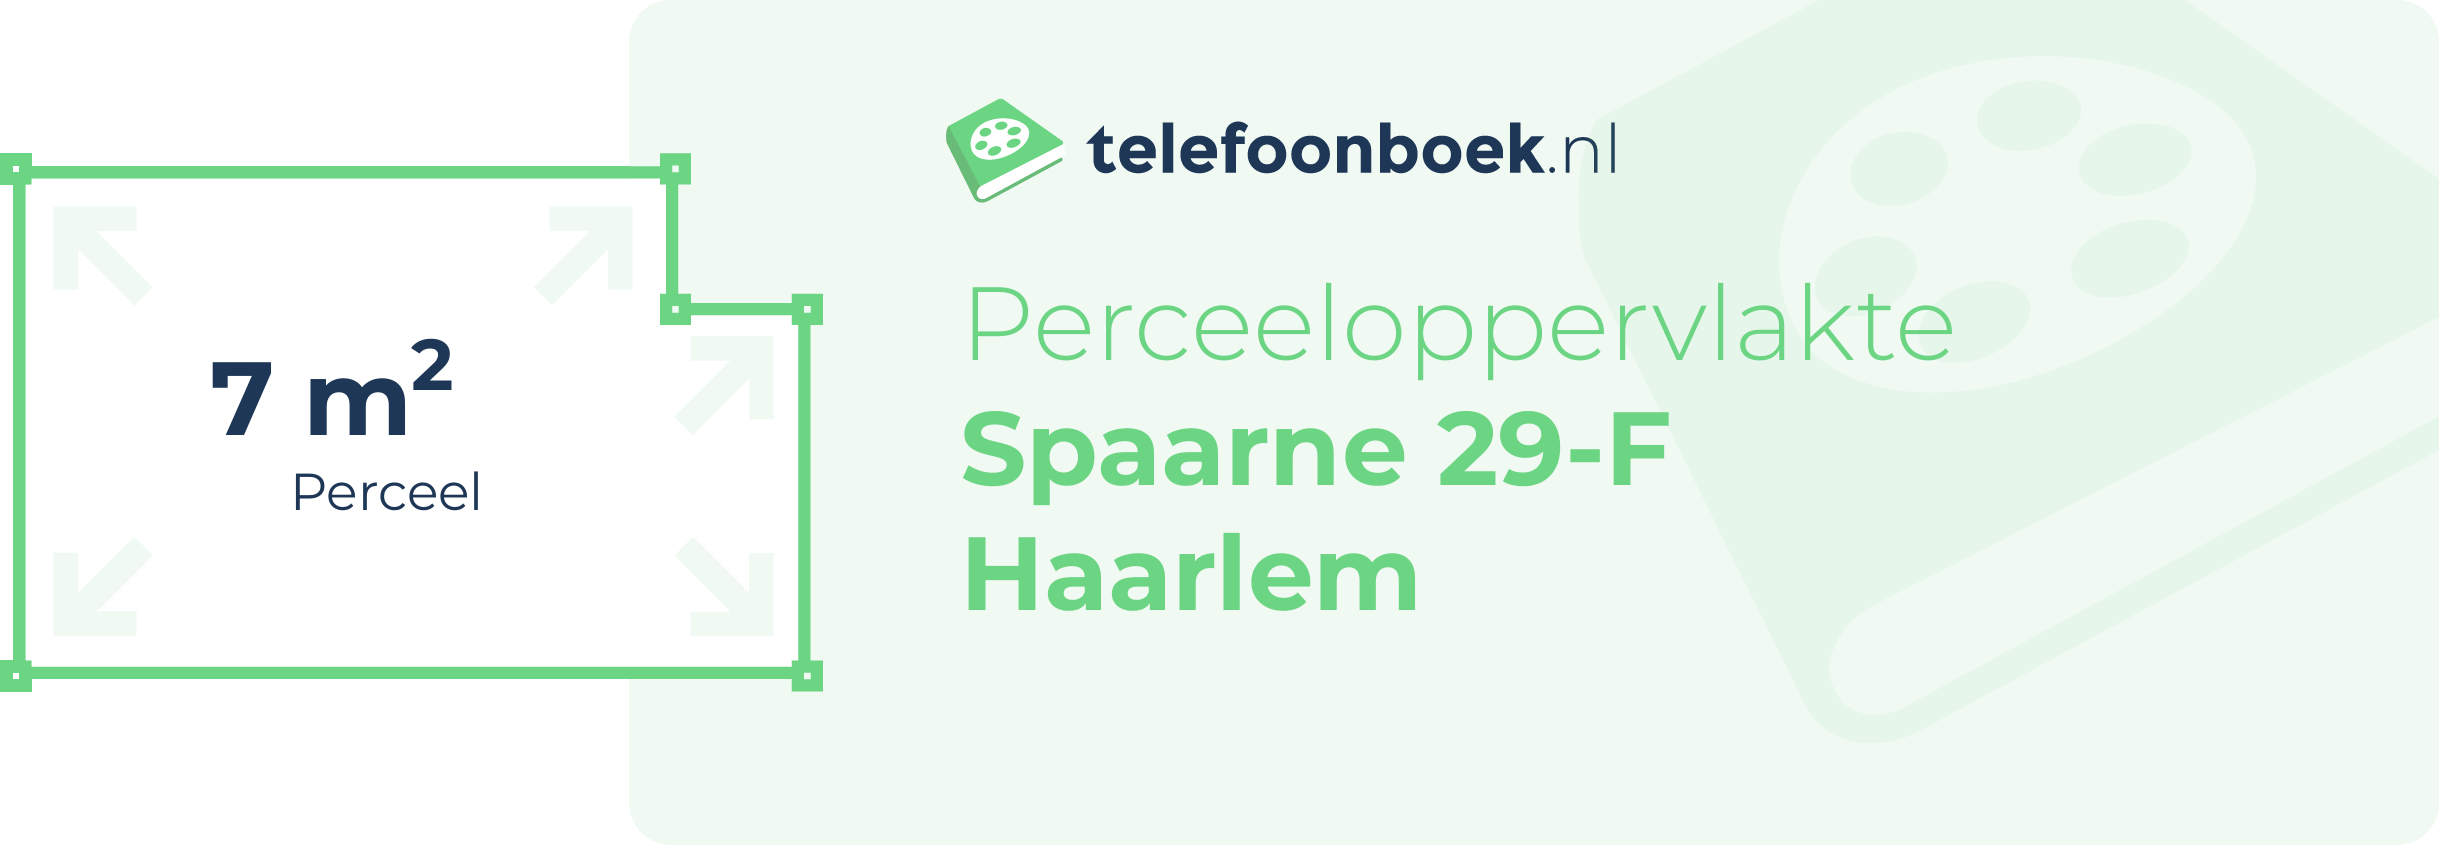 Perceeloppervlakte Spaarne 29-F Haarlem